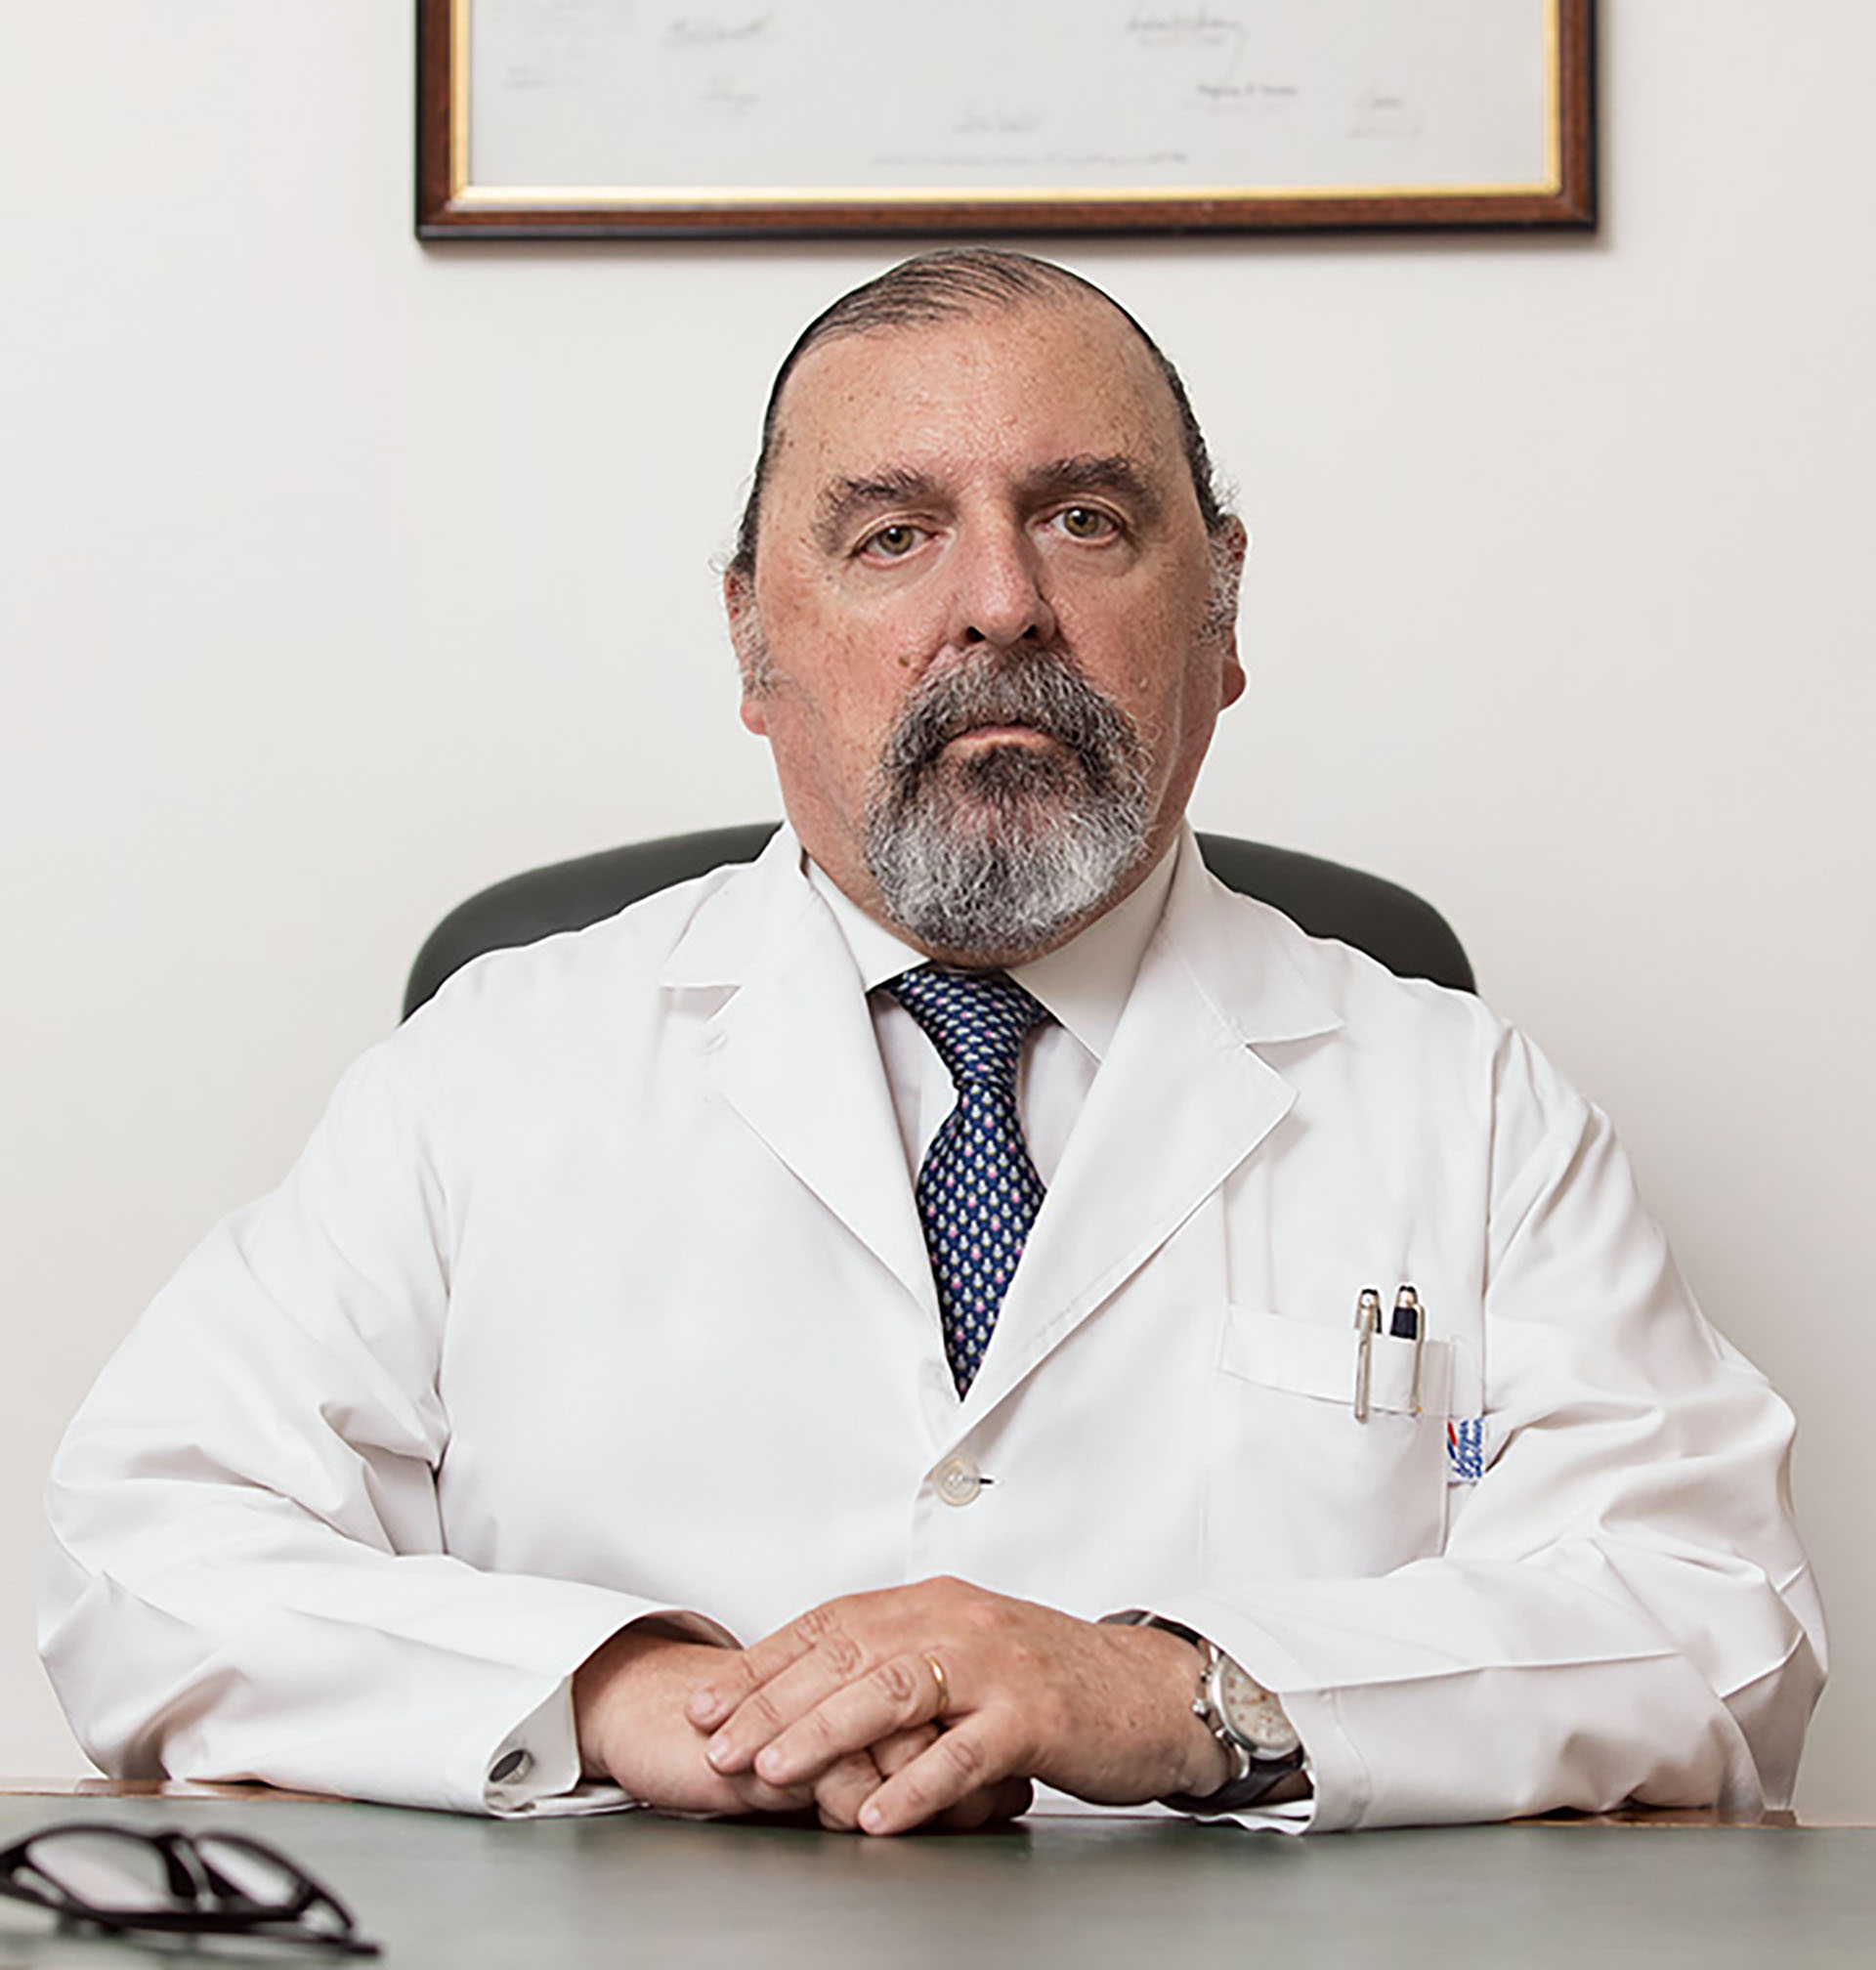 Ramiro Quintana es el primer autor del trabajo que recibió la distinción de la Academia Nacional de Medicina. Es ex vicepresidente de la Sociedad de Medicina Reproductiva, director de Quintana Salud Reproductiva, está a cargo del Departamento de Oncofertilidad de Procrearte y es ex director médico del IFER. 